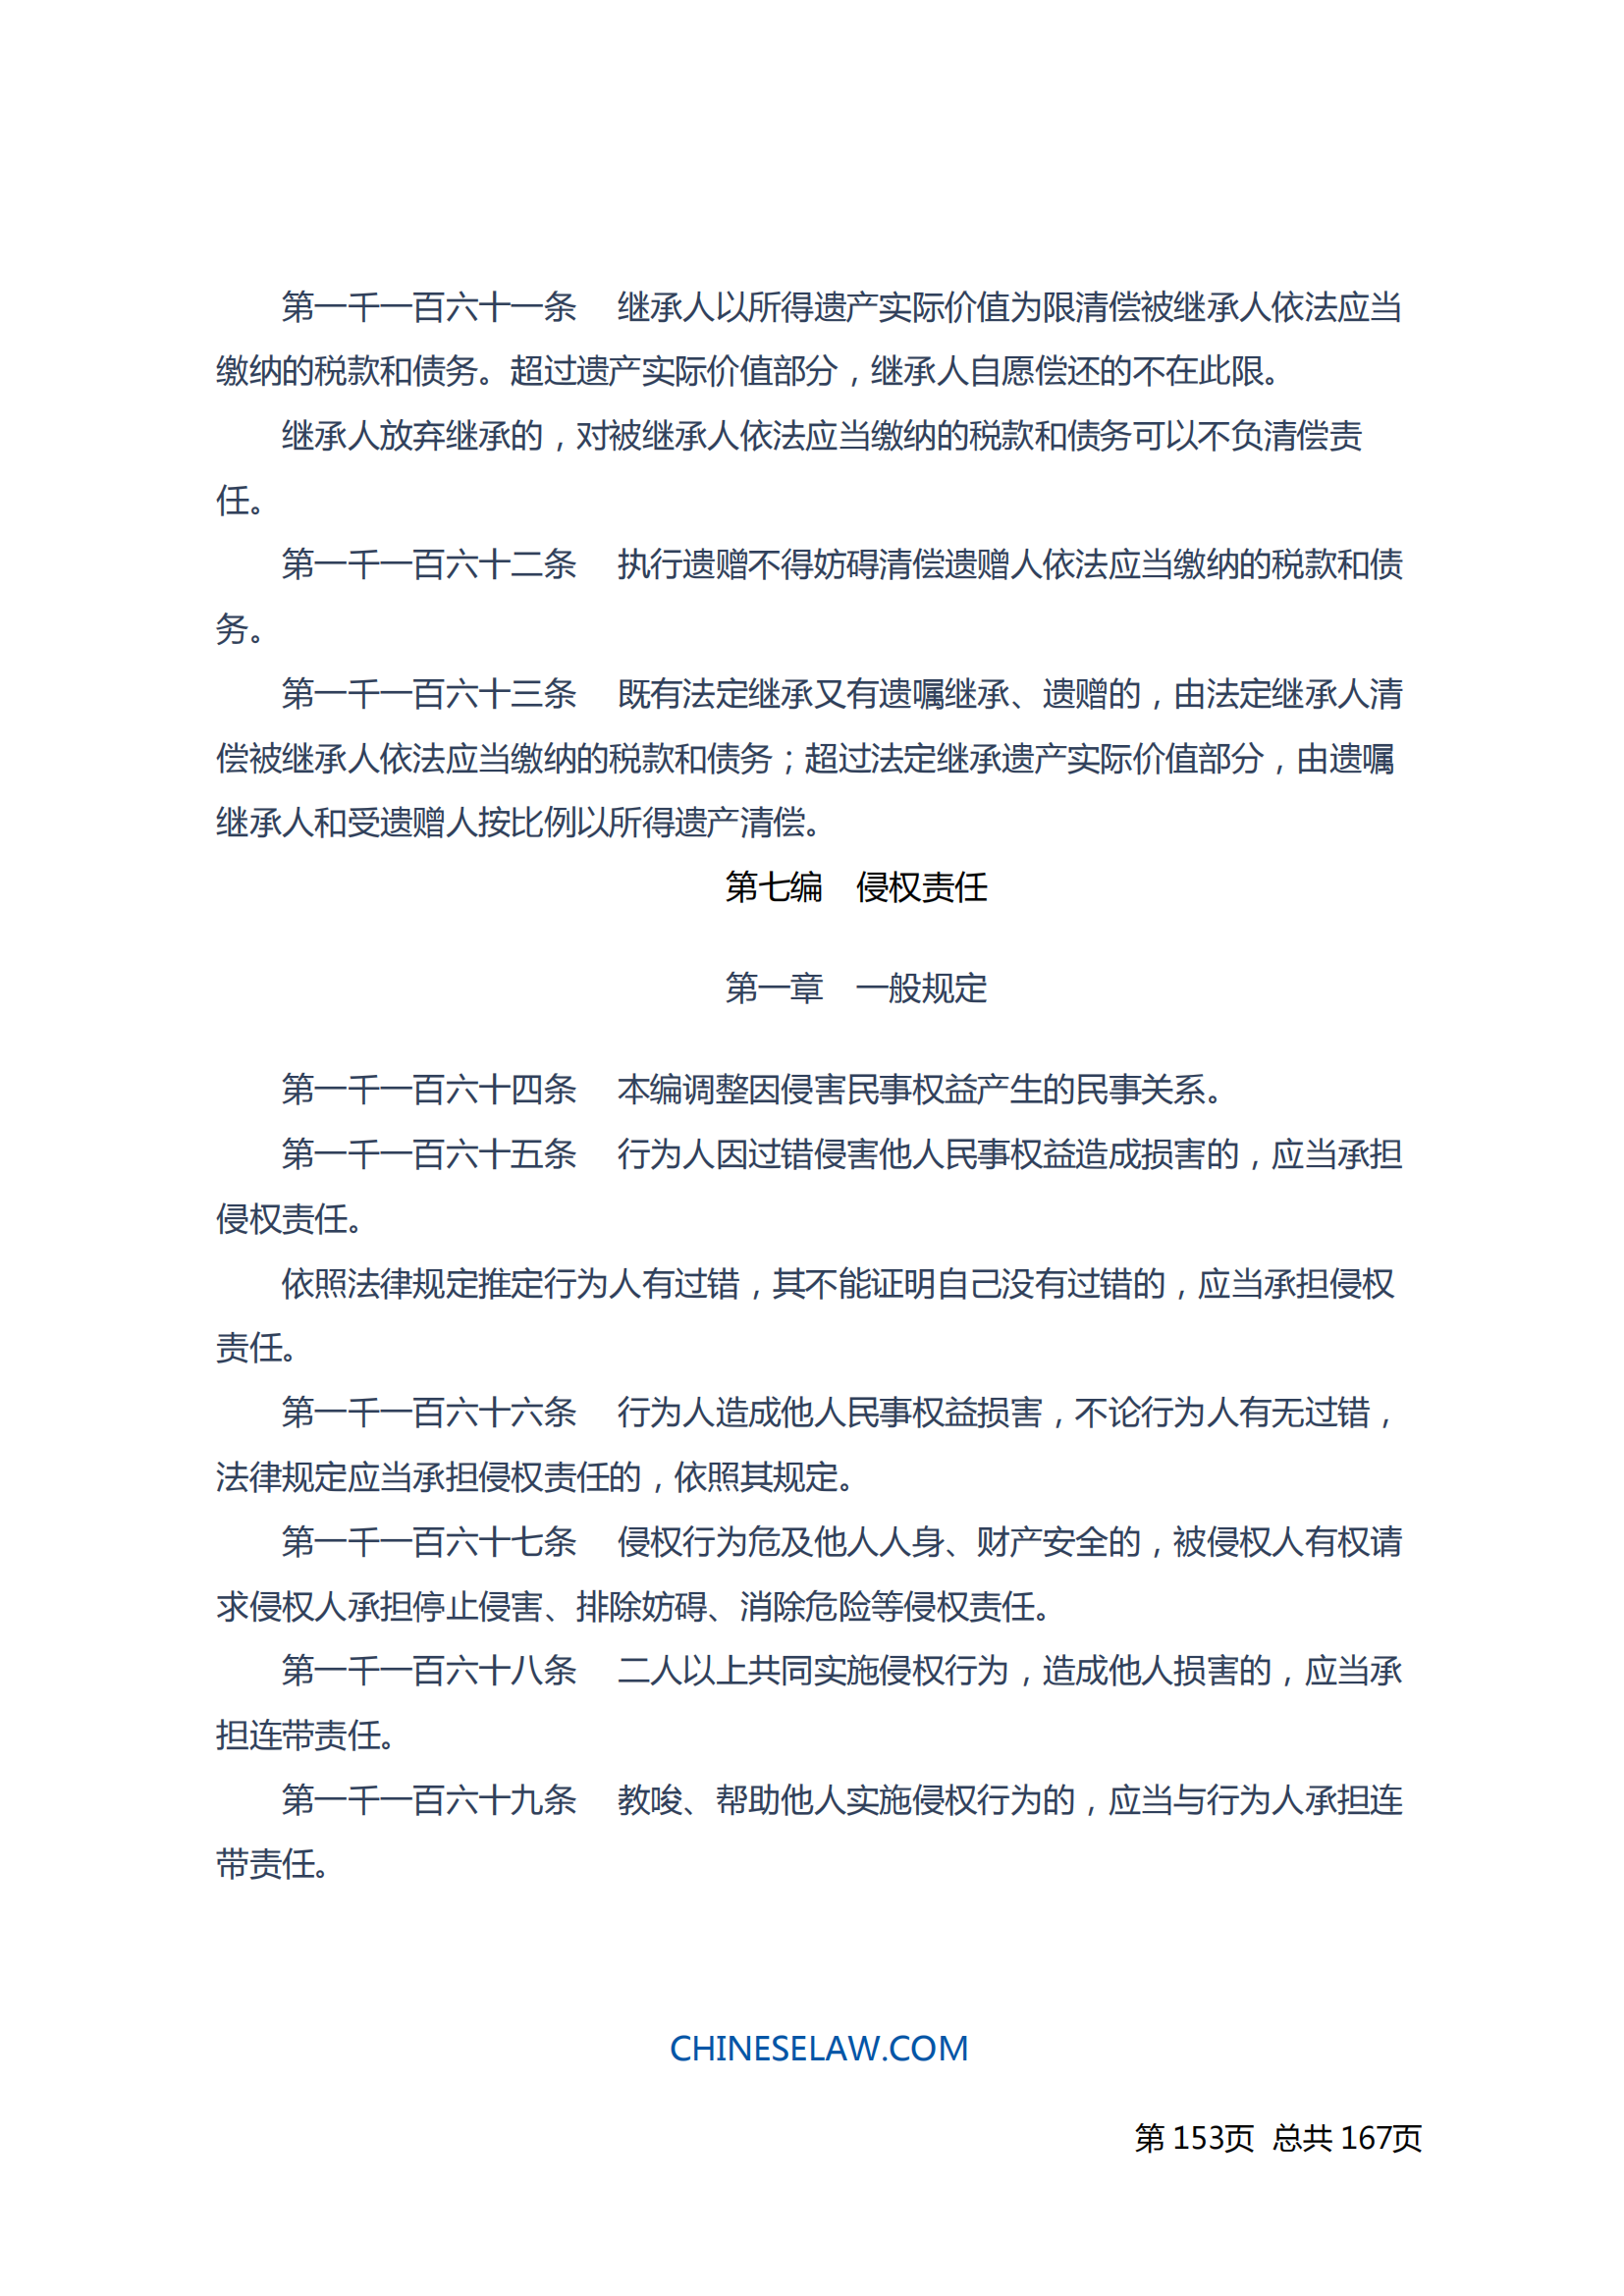 中华人民共和国民法典_152